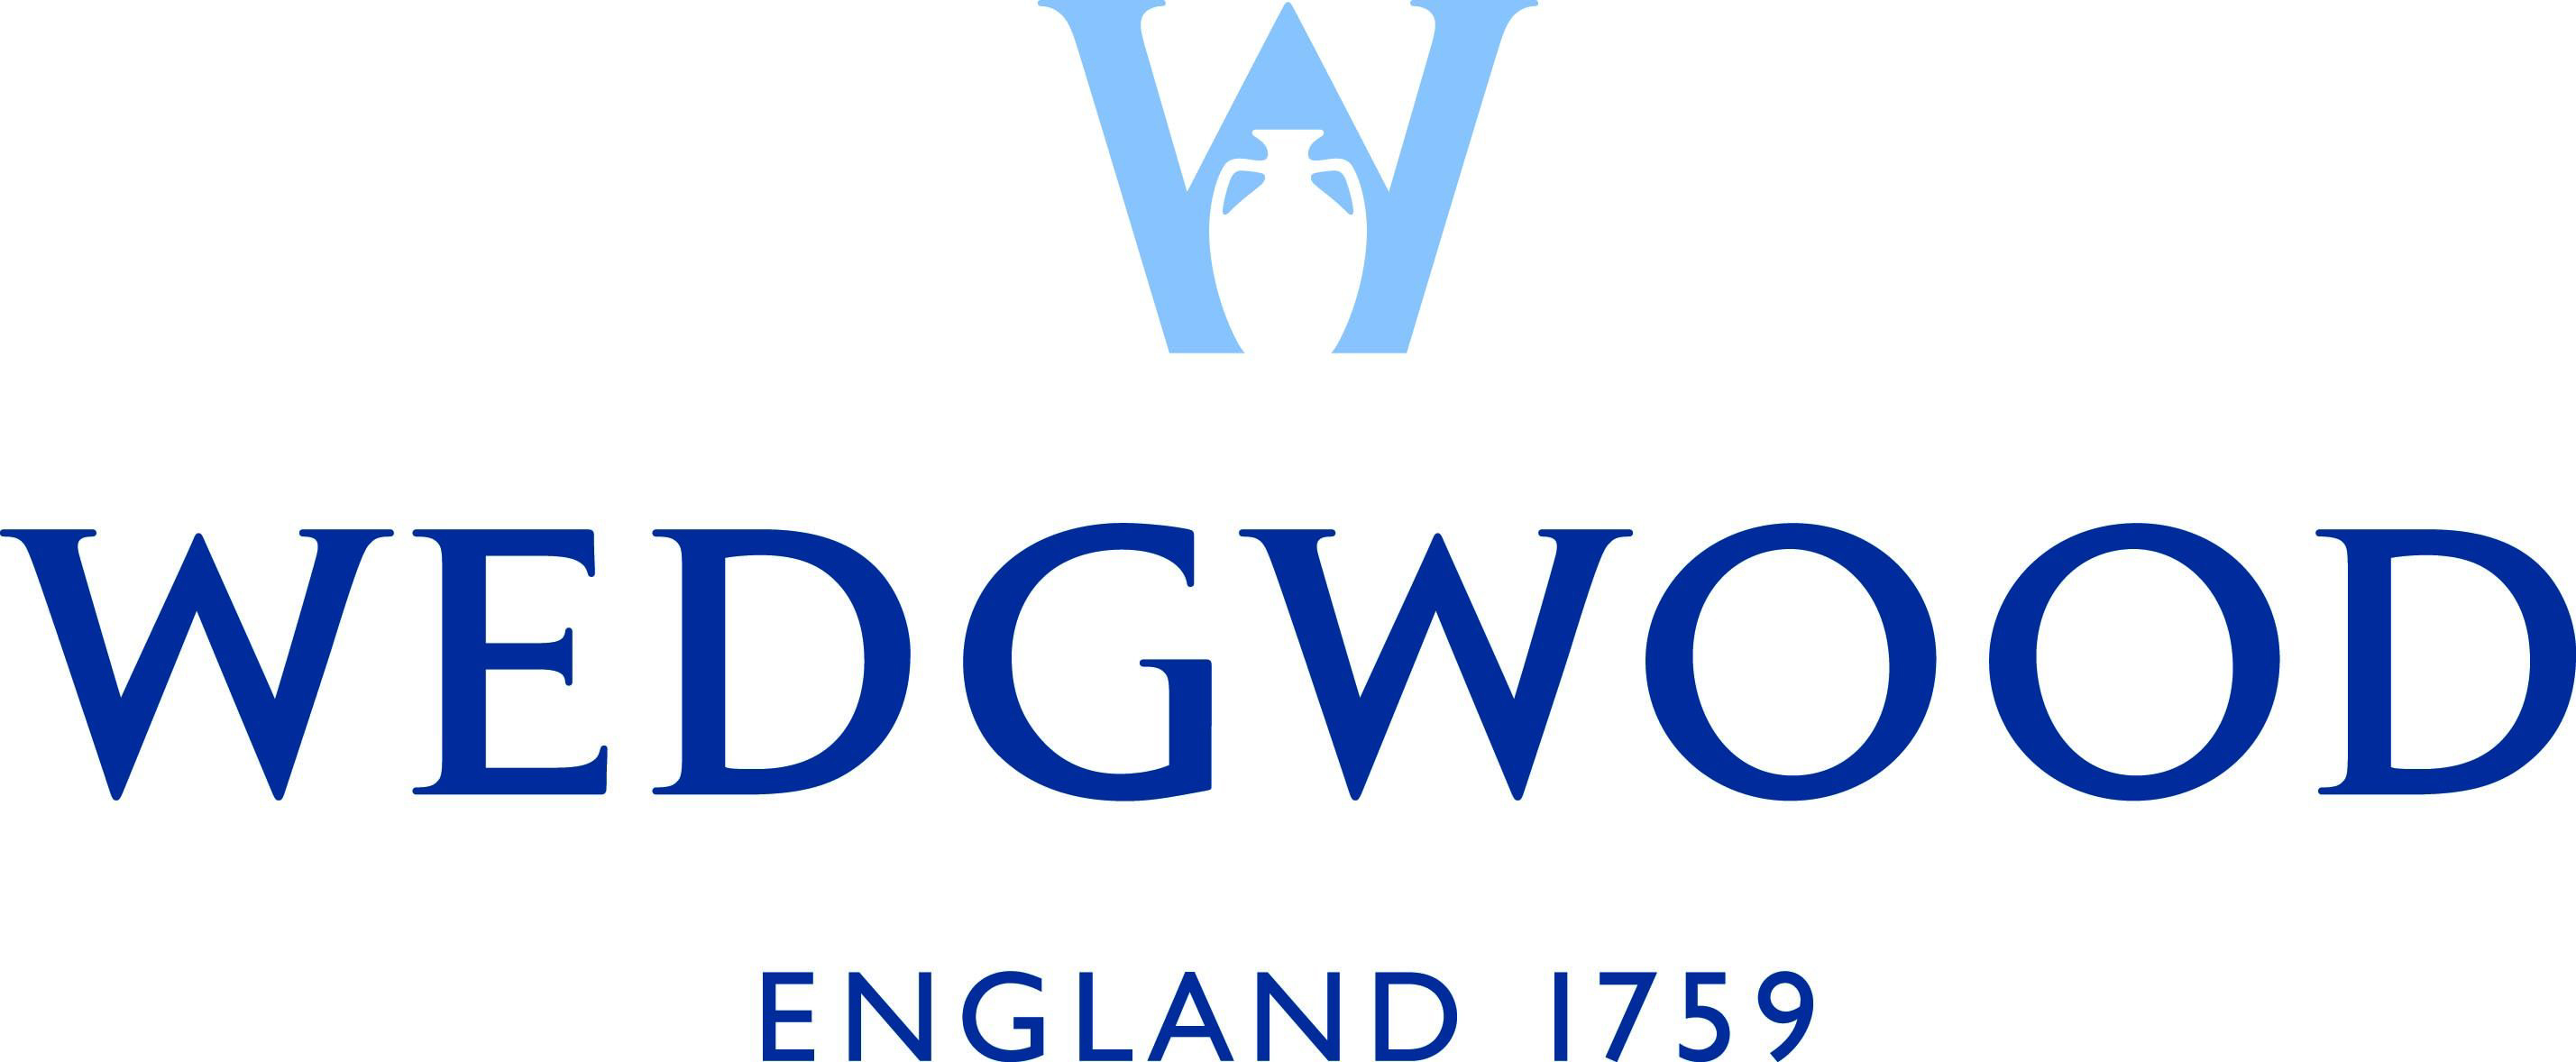 wedgwood_logo